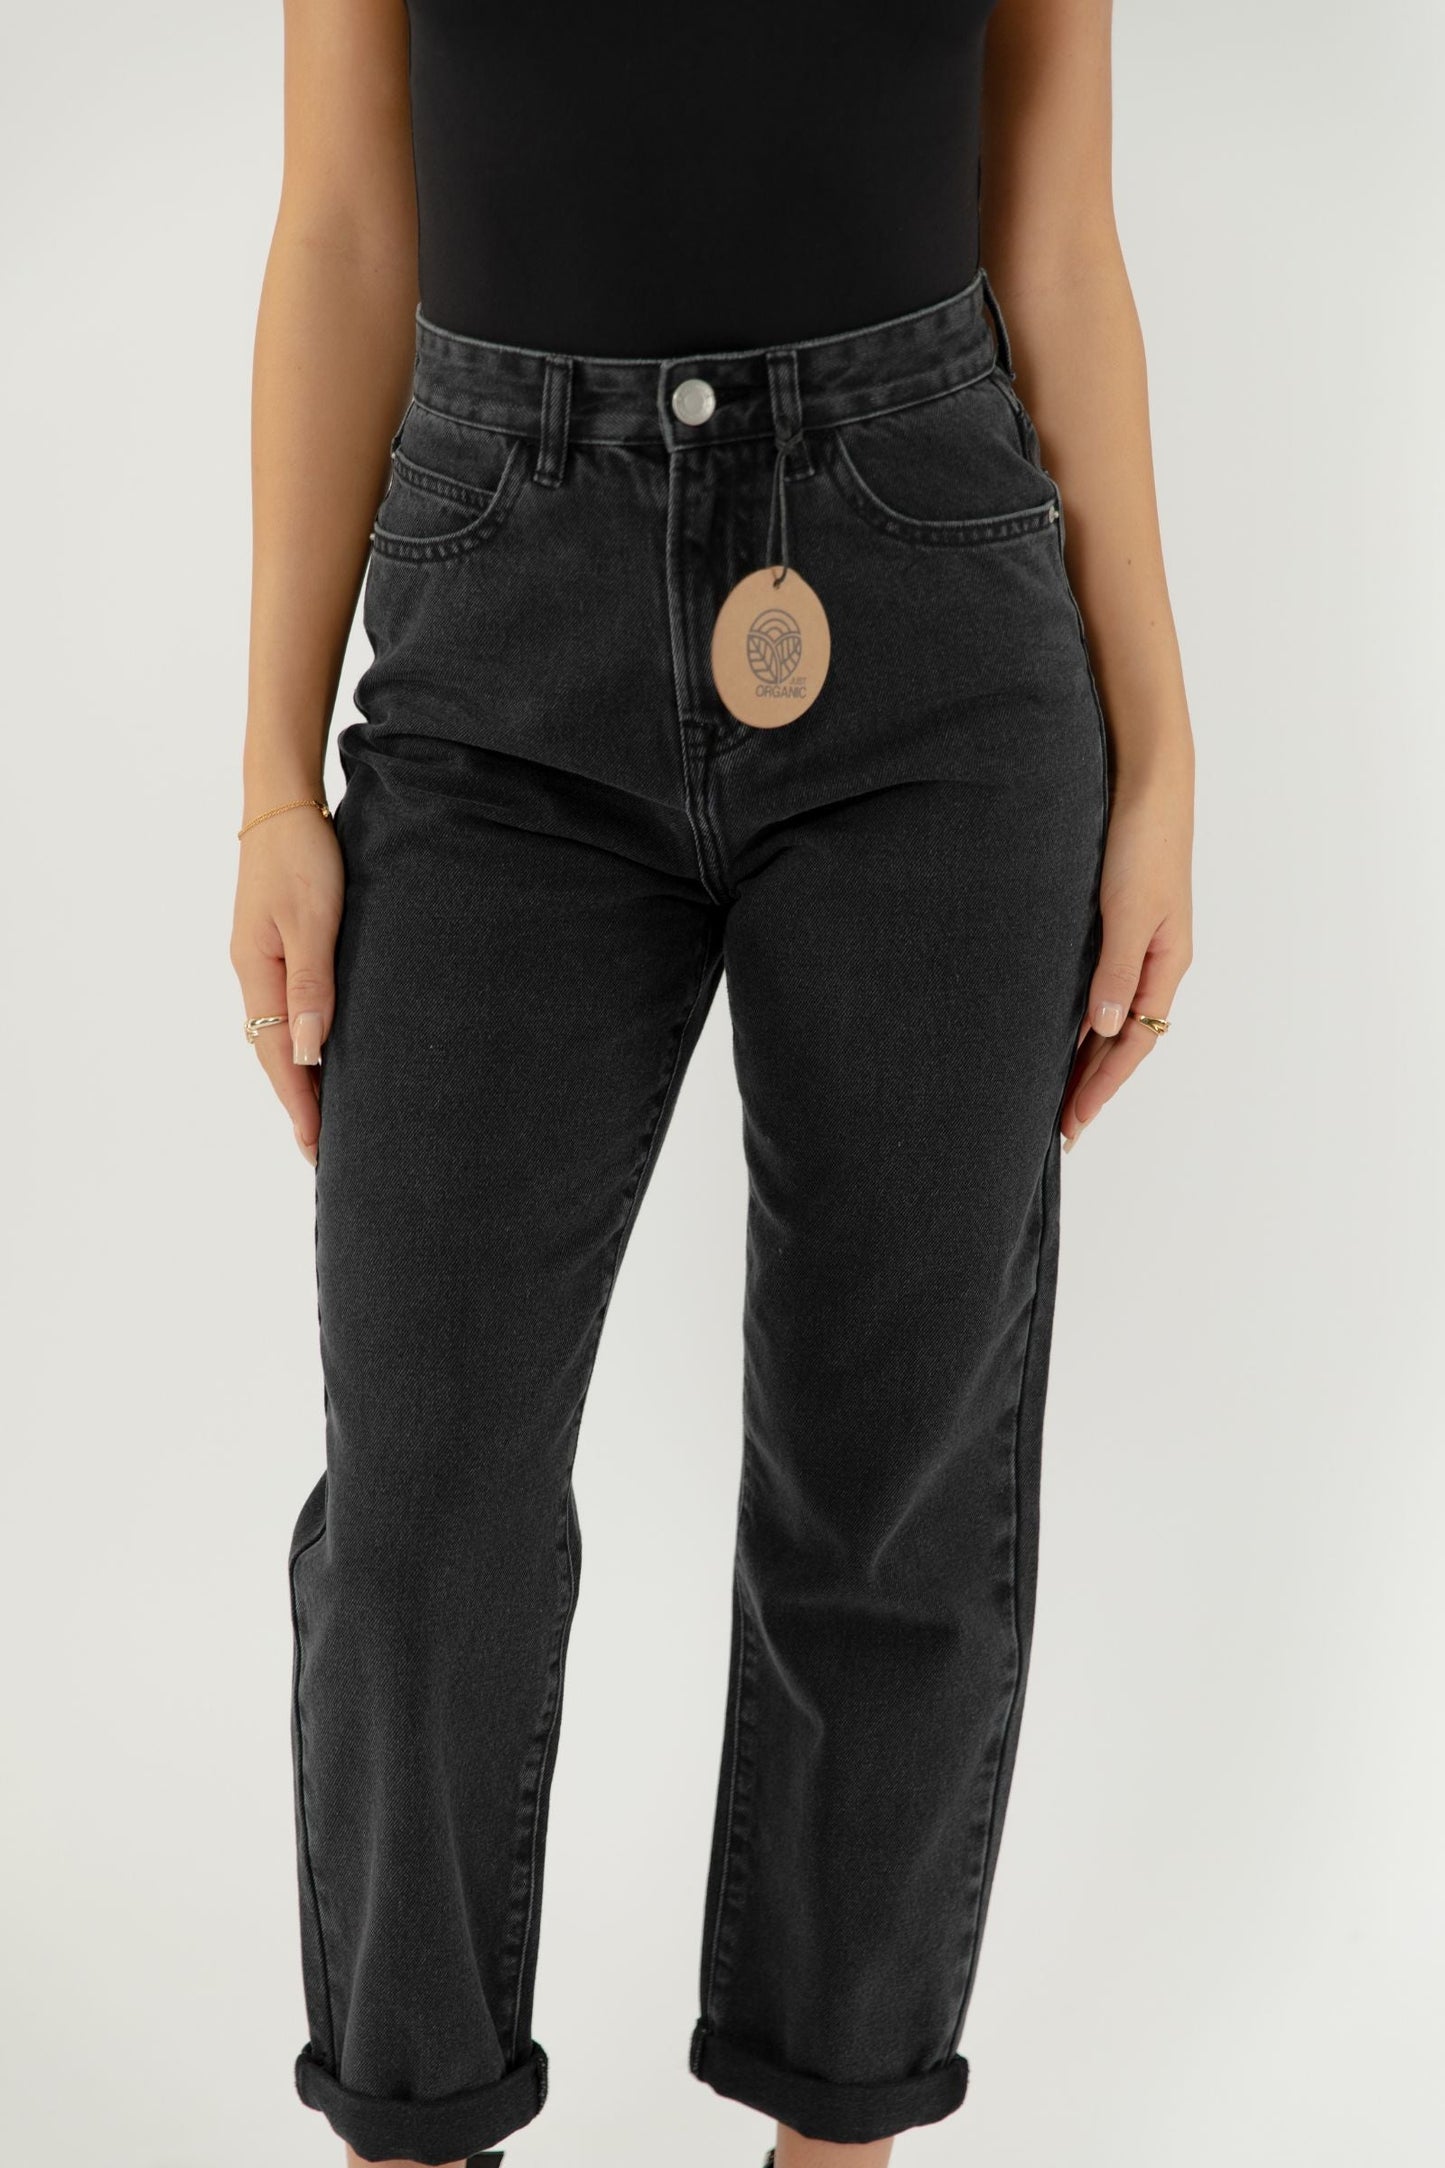 POPPY Slim MOM Jeans - Washed Black